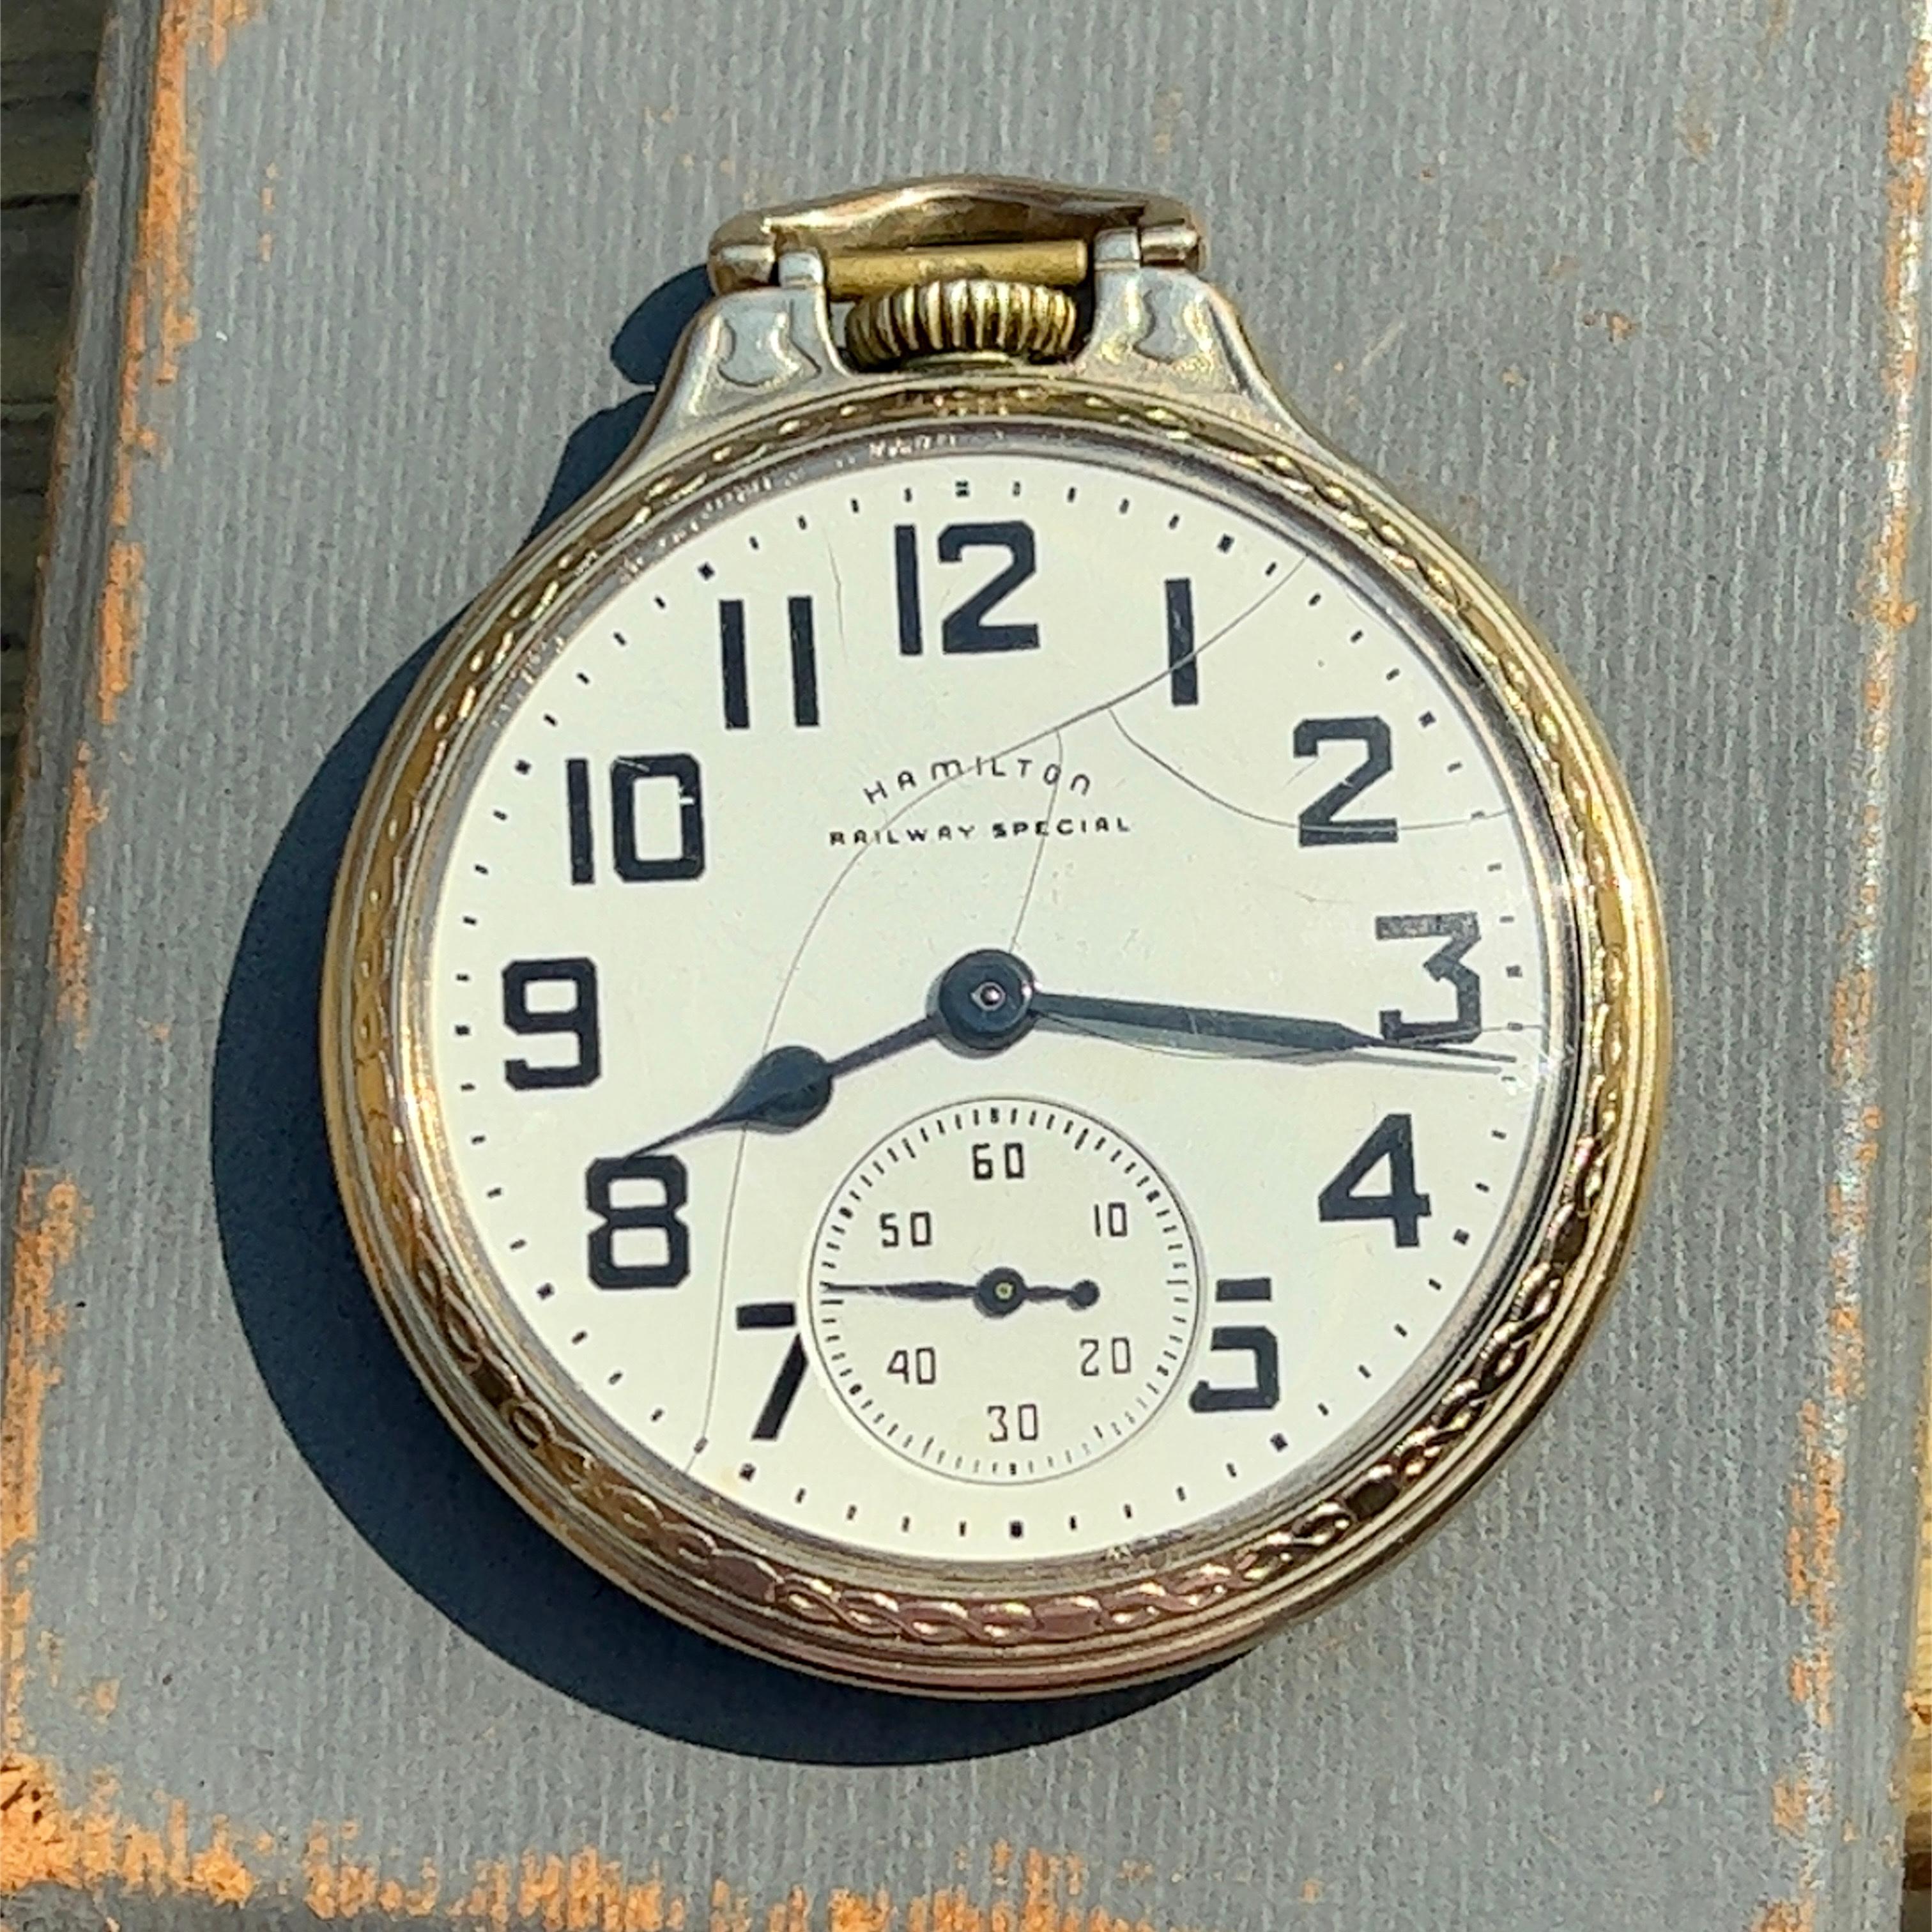 hamilton railroad special pocket watch